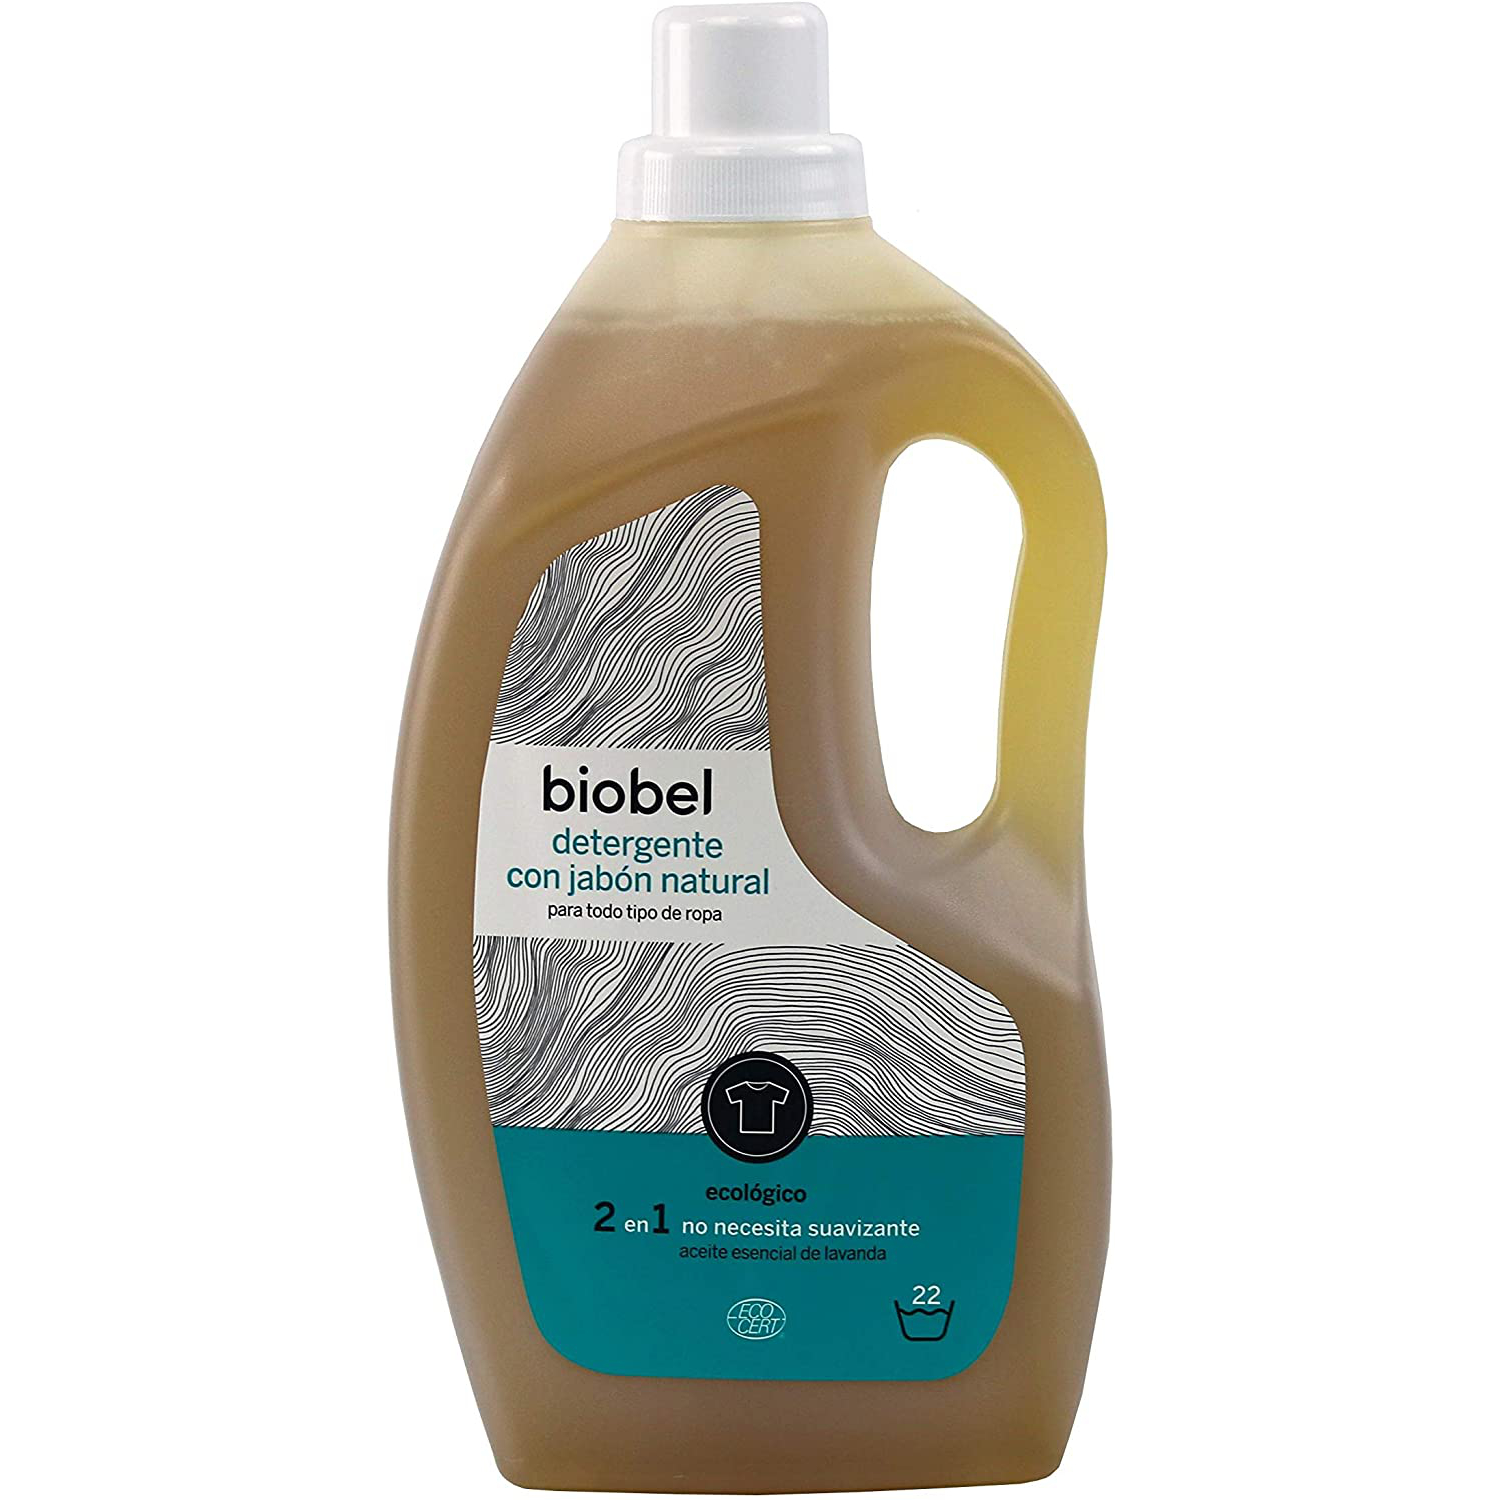 Detergente con jabón natural todo tipo de ropa (1,5 litros) BioBel en Idun Nature Tienda Online de Cosmética Natural